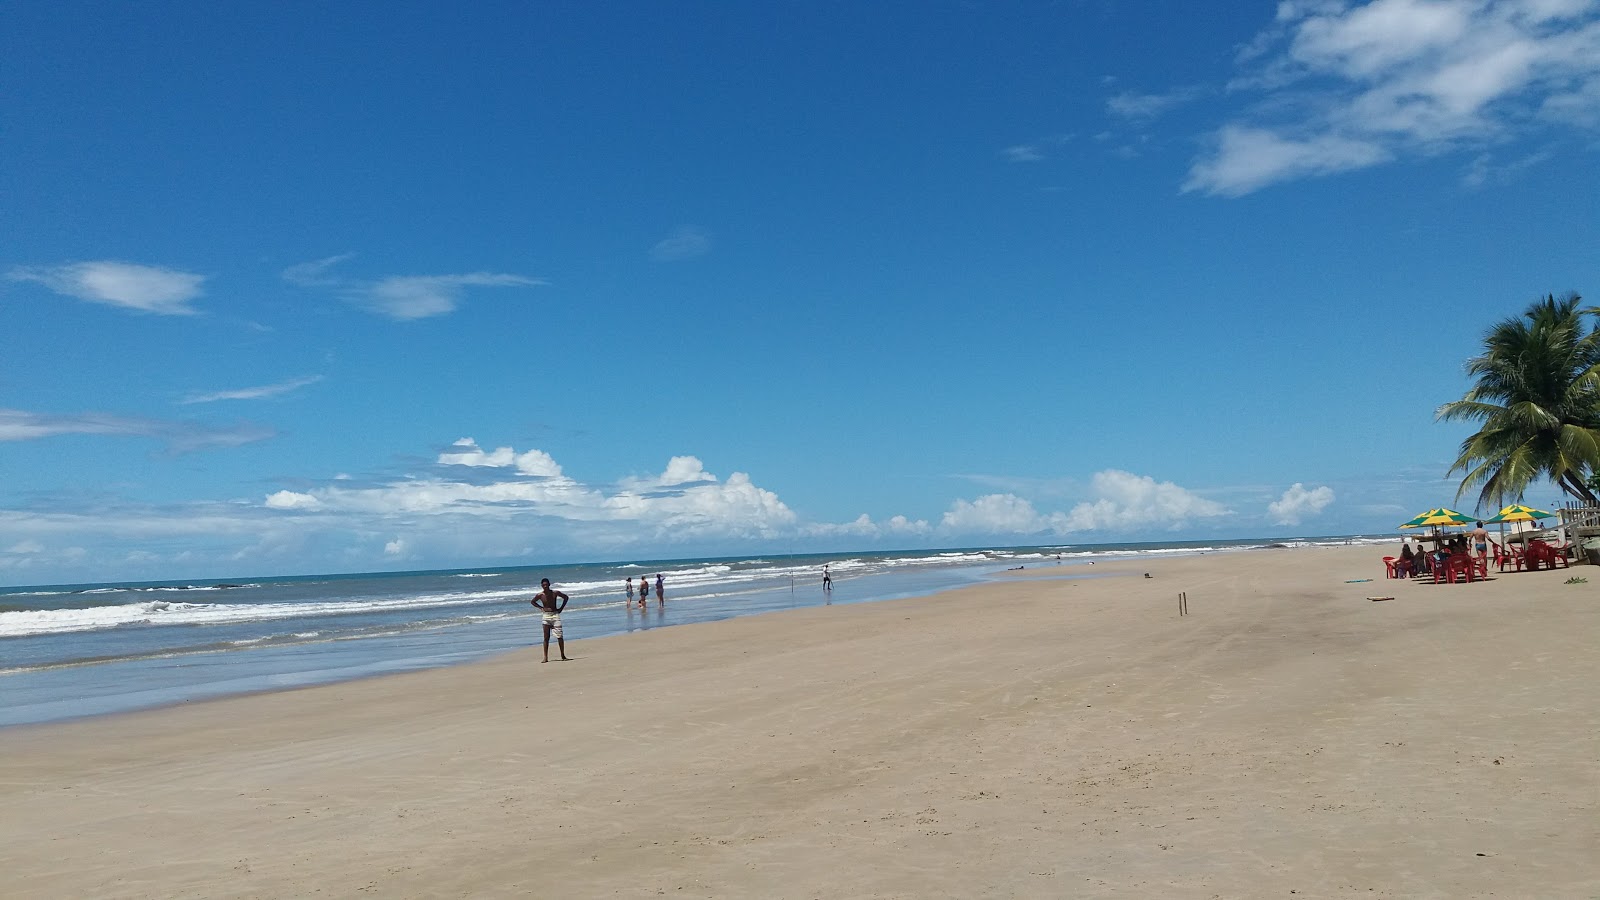 Praia Do Jairy'in fotoğrafı parlak ince kum yüzey ile